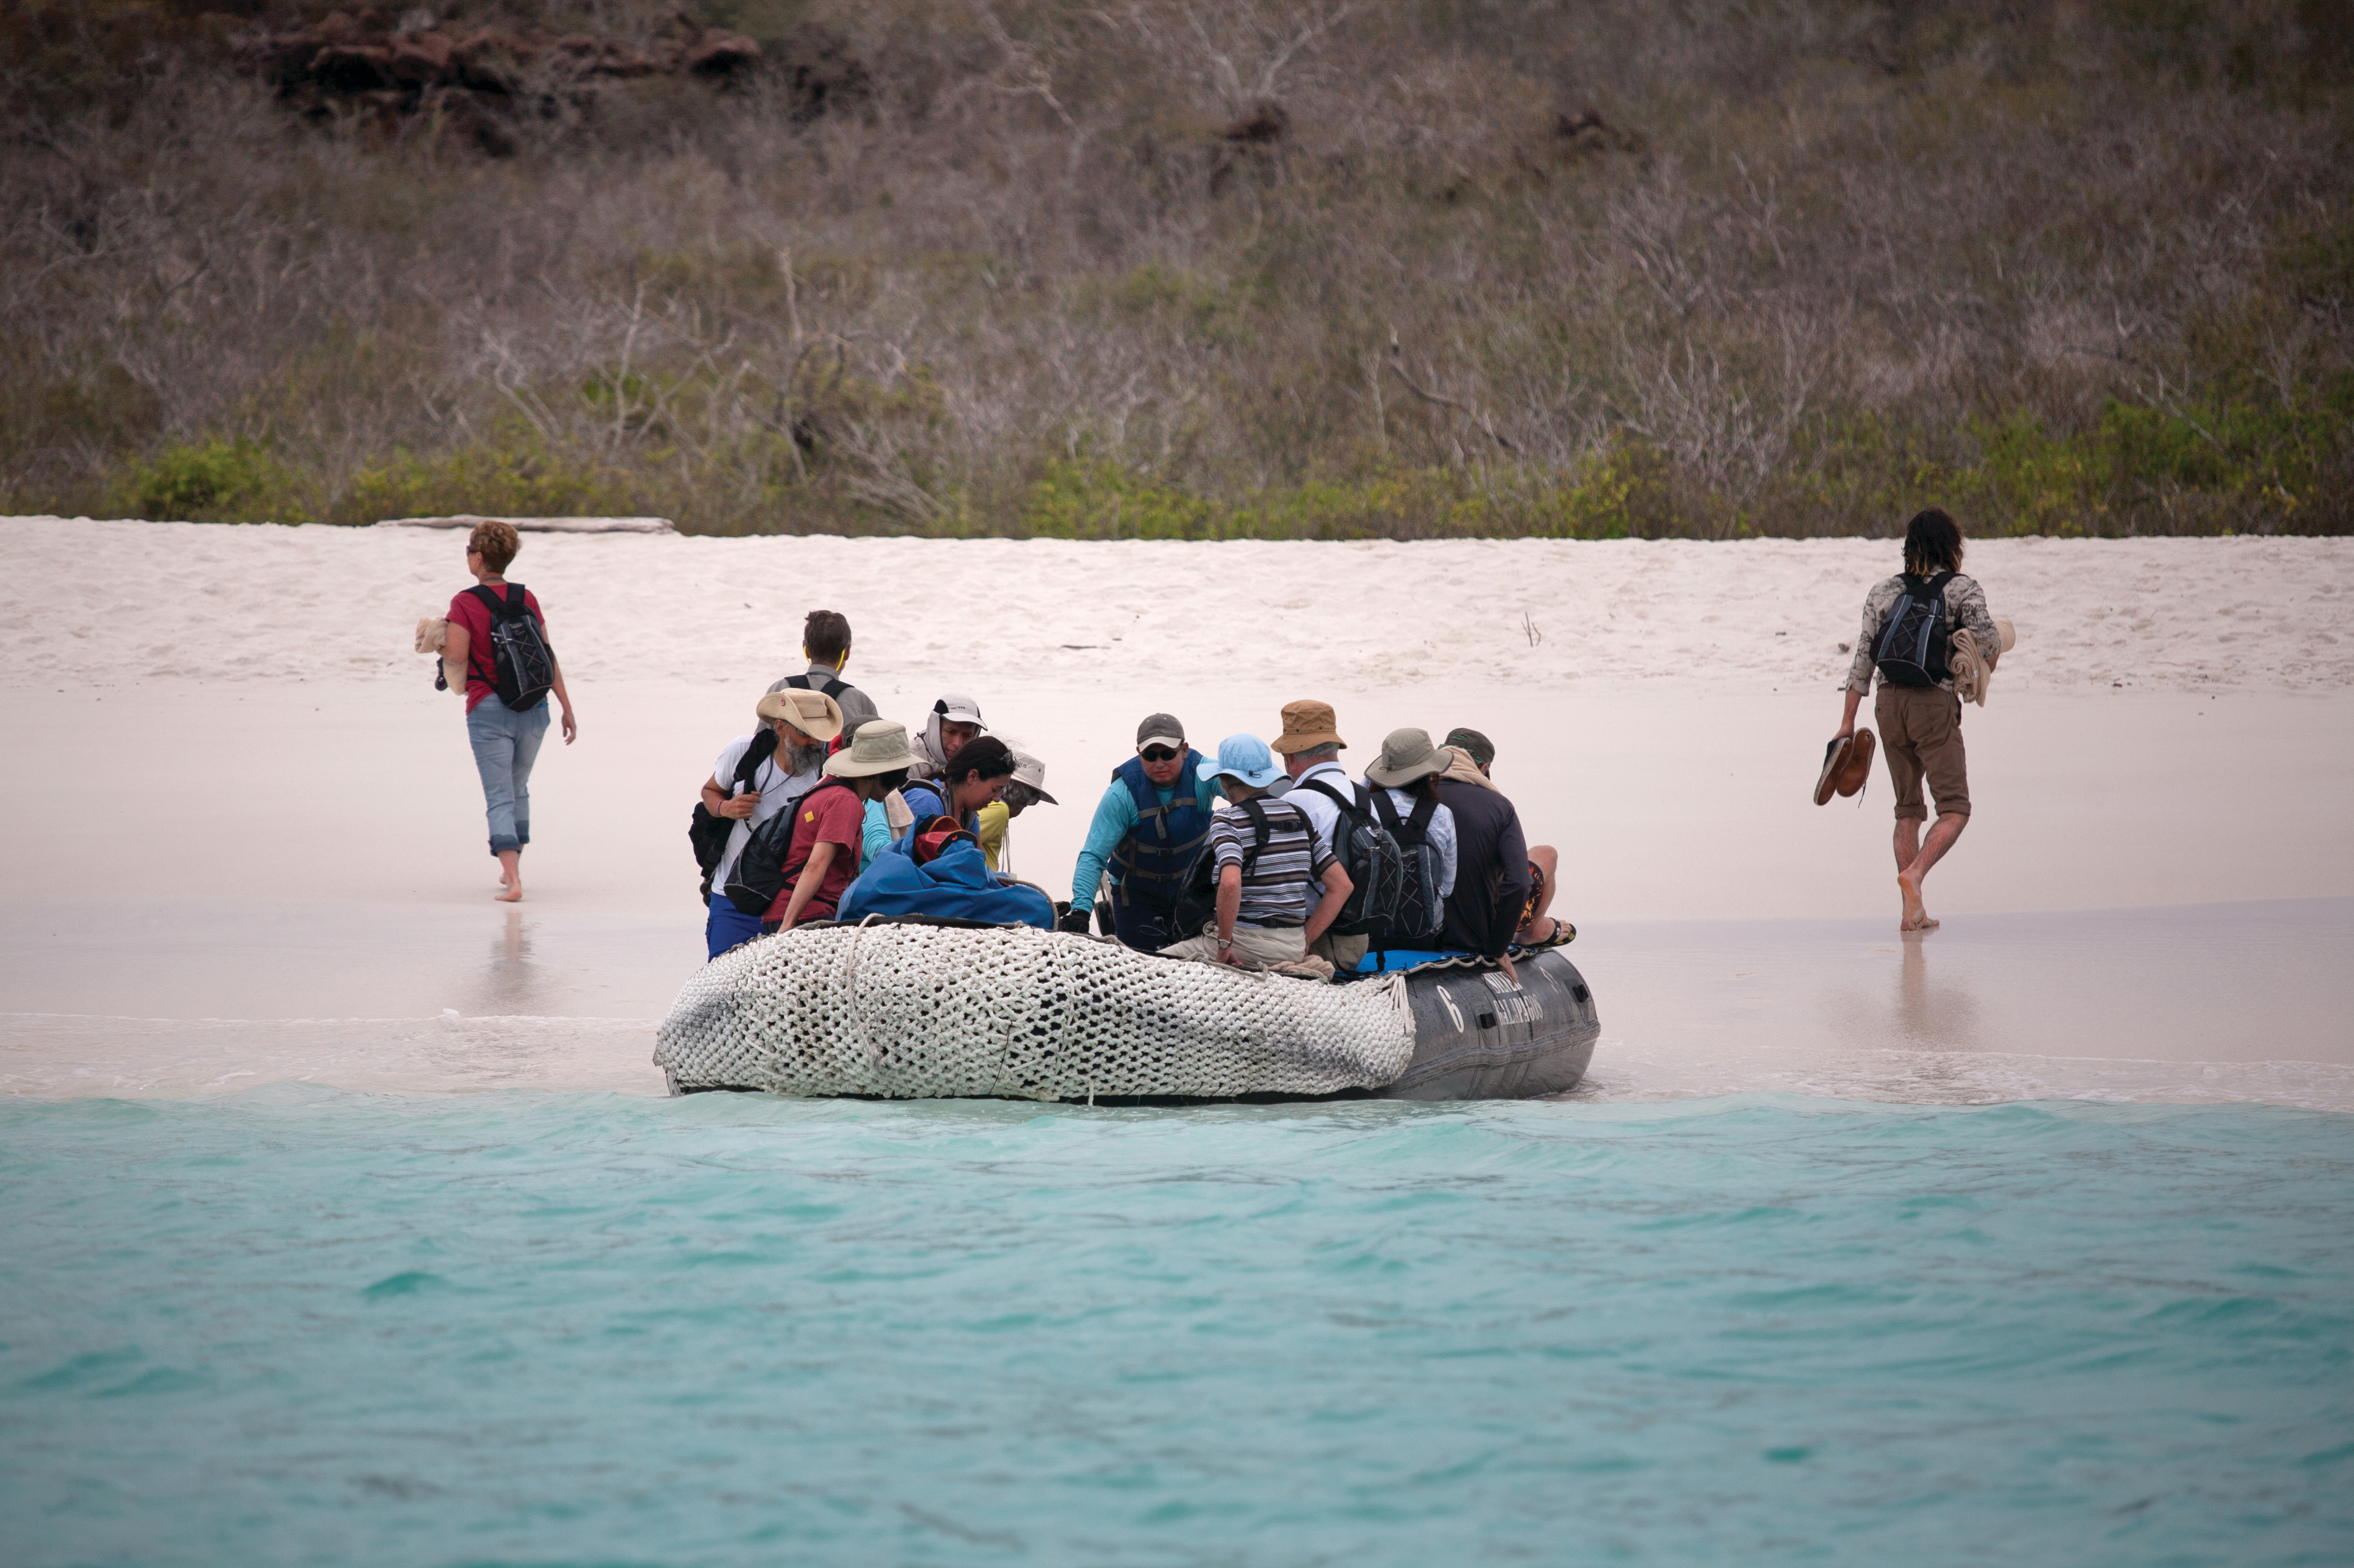 Silversea - Zodiac landing on Espanola, Galapagos